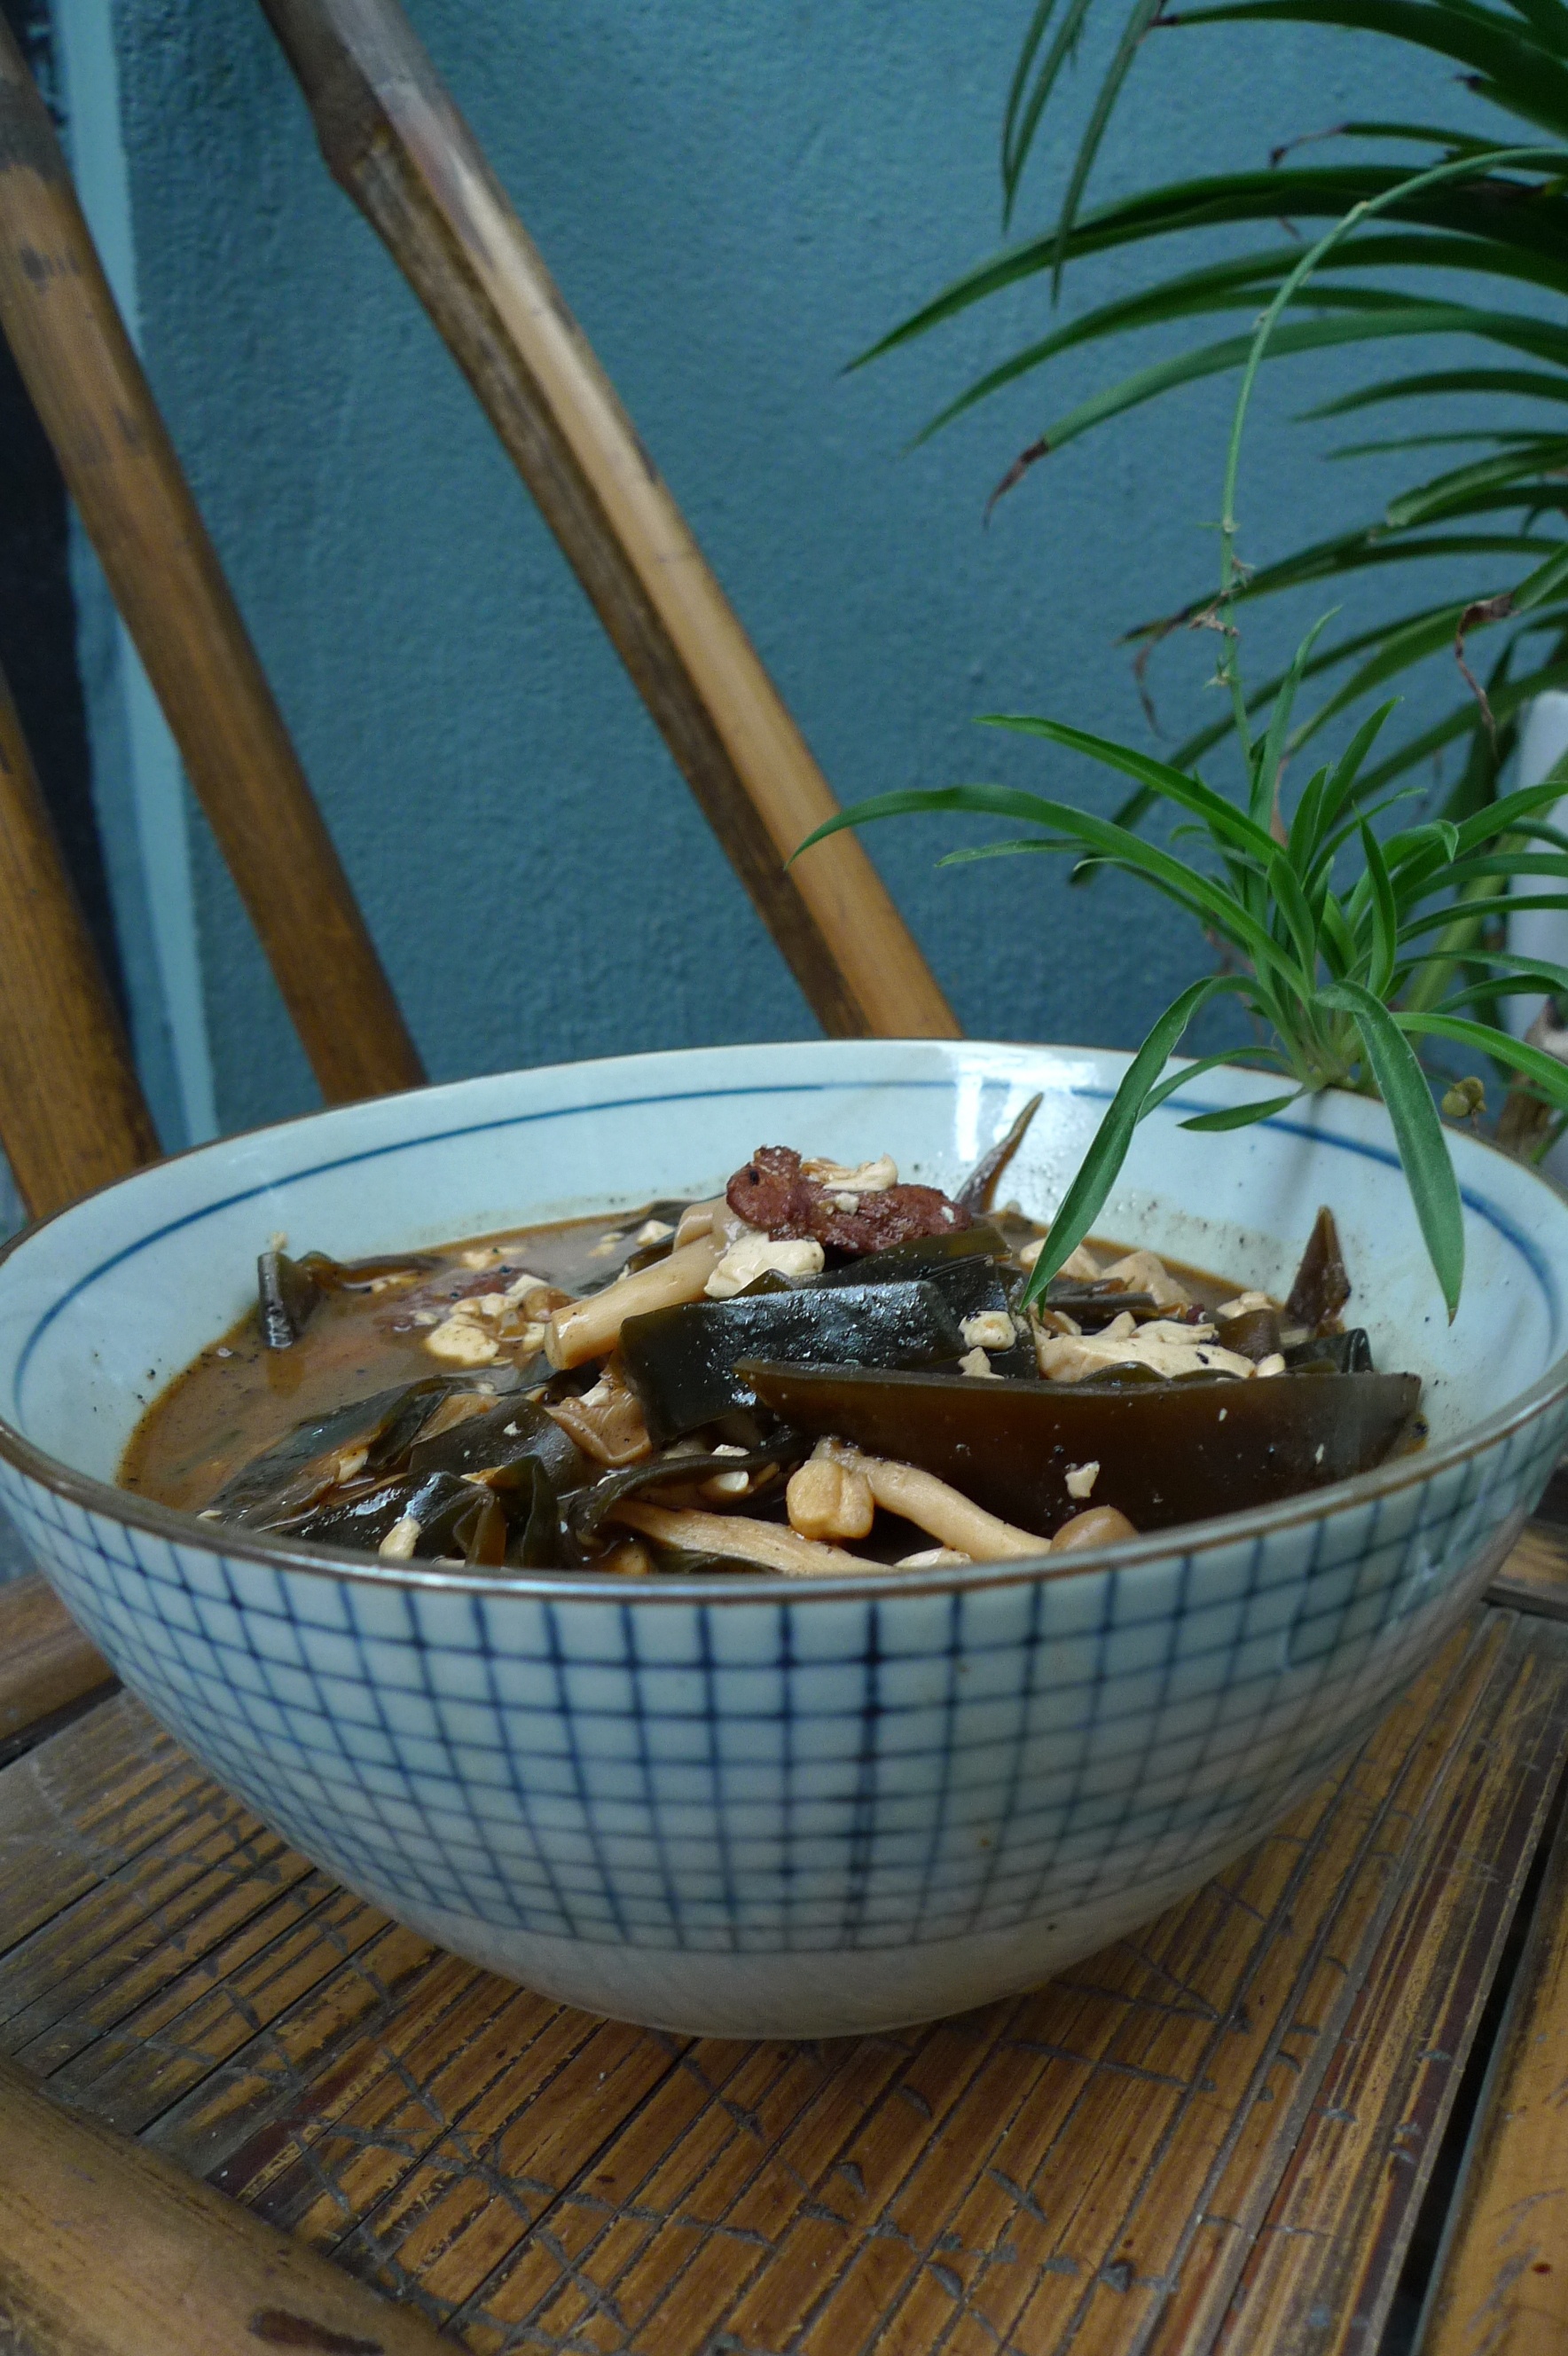 海带豆腐味噌汤